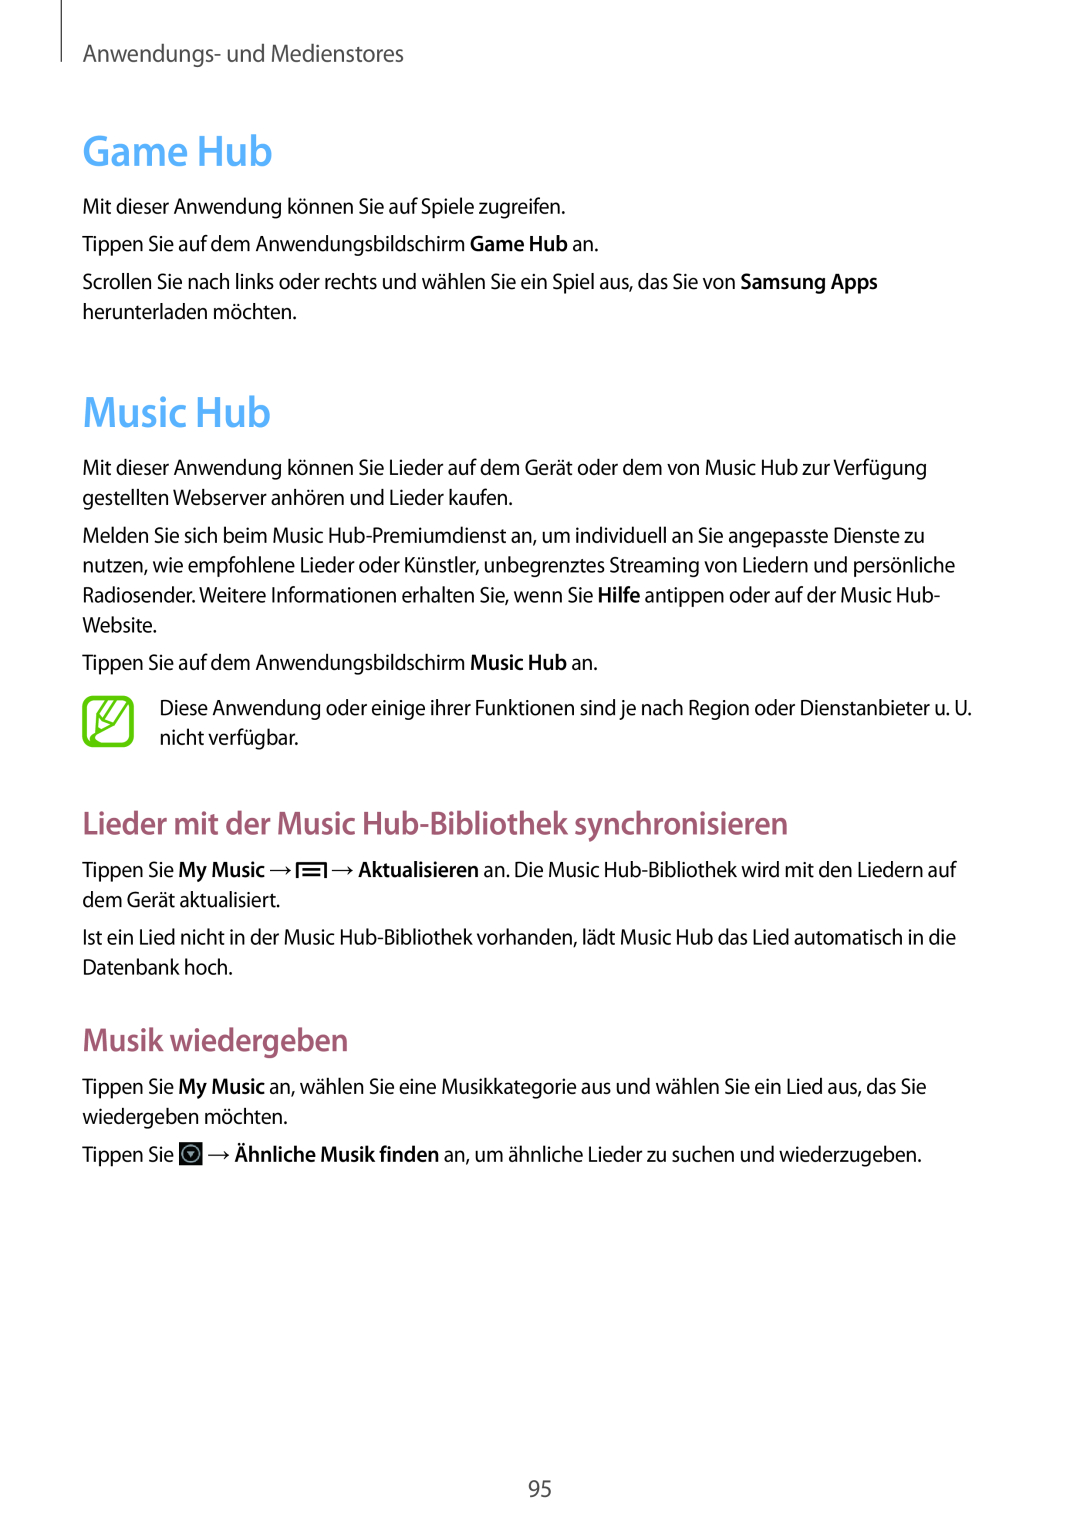 Samsung GT-N7100TADDBT manual Game Hub, Lieder mit der Music Hub-Bibliothek synchronisieren, Musik wiedergeben 